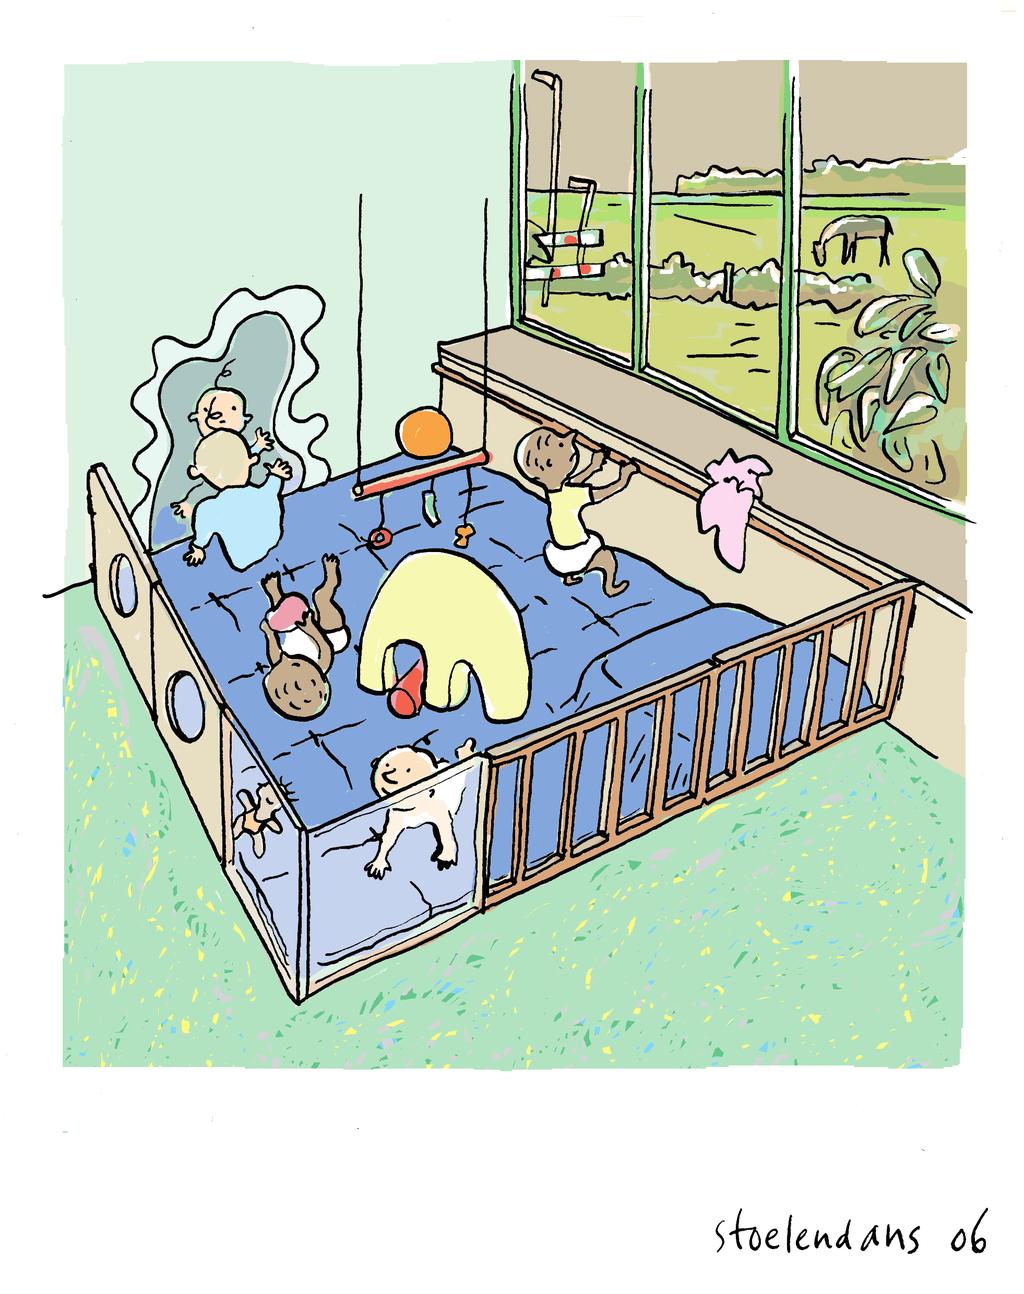 medewerker. Ook een hangmatje kan voor jonge baby s heel rustgevend zijn. Hang het wel op een veilige plaats (bijvoorbeeld in of boven de box).